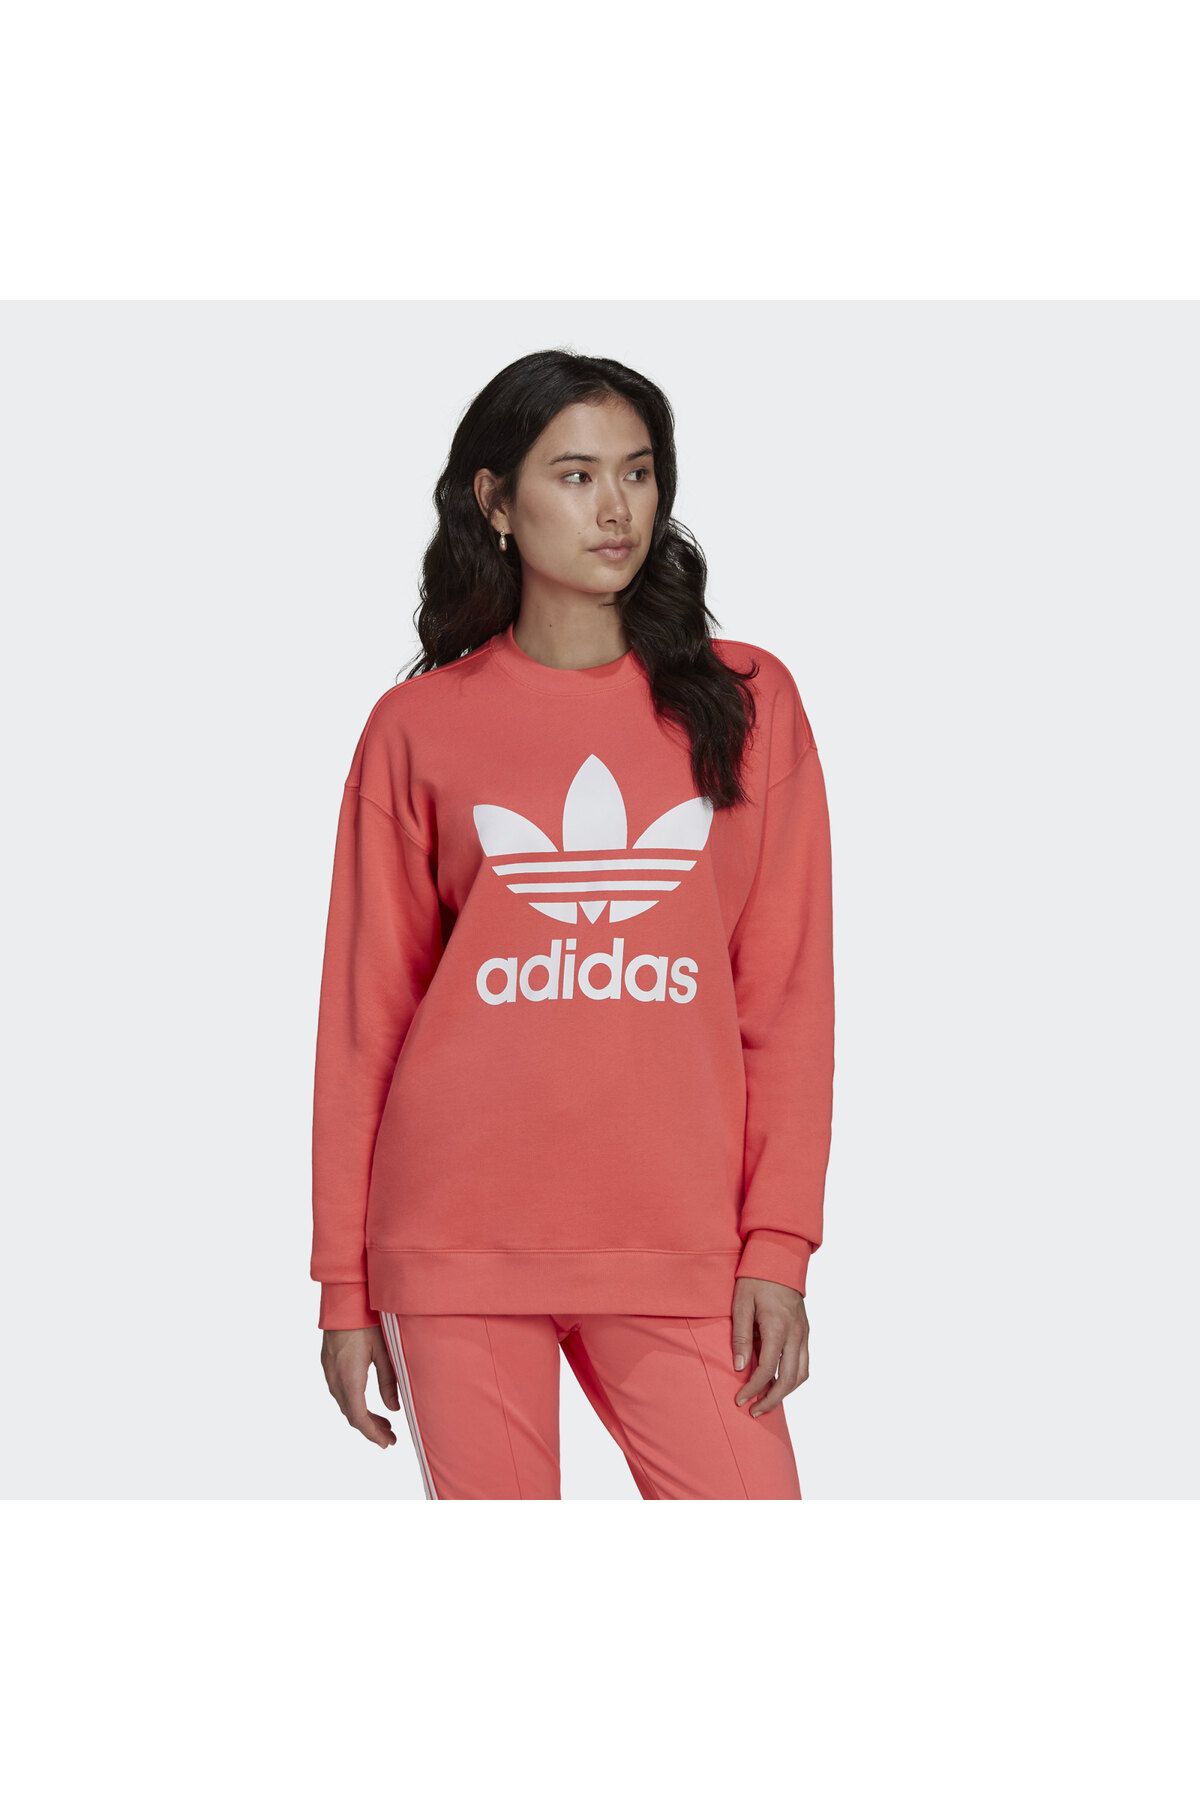 adidas Trefoil Crew Kadın Sweatshirt He9537